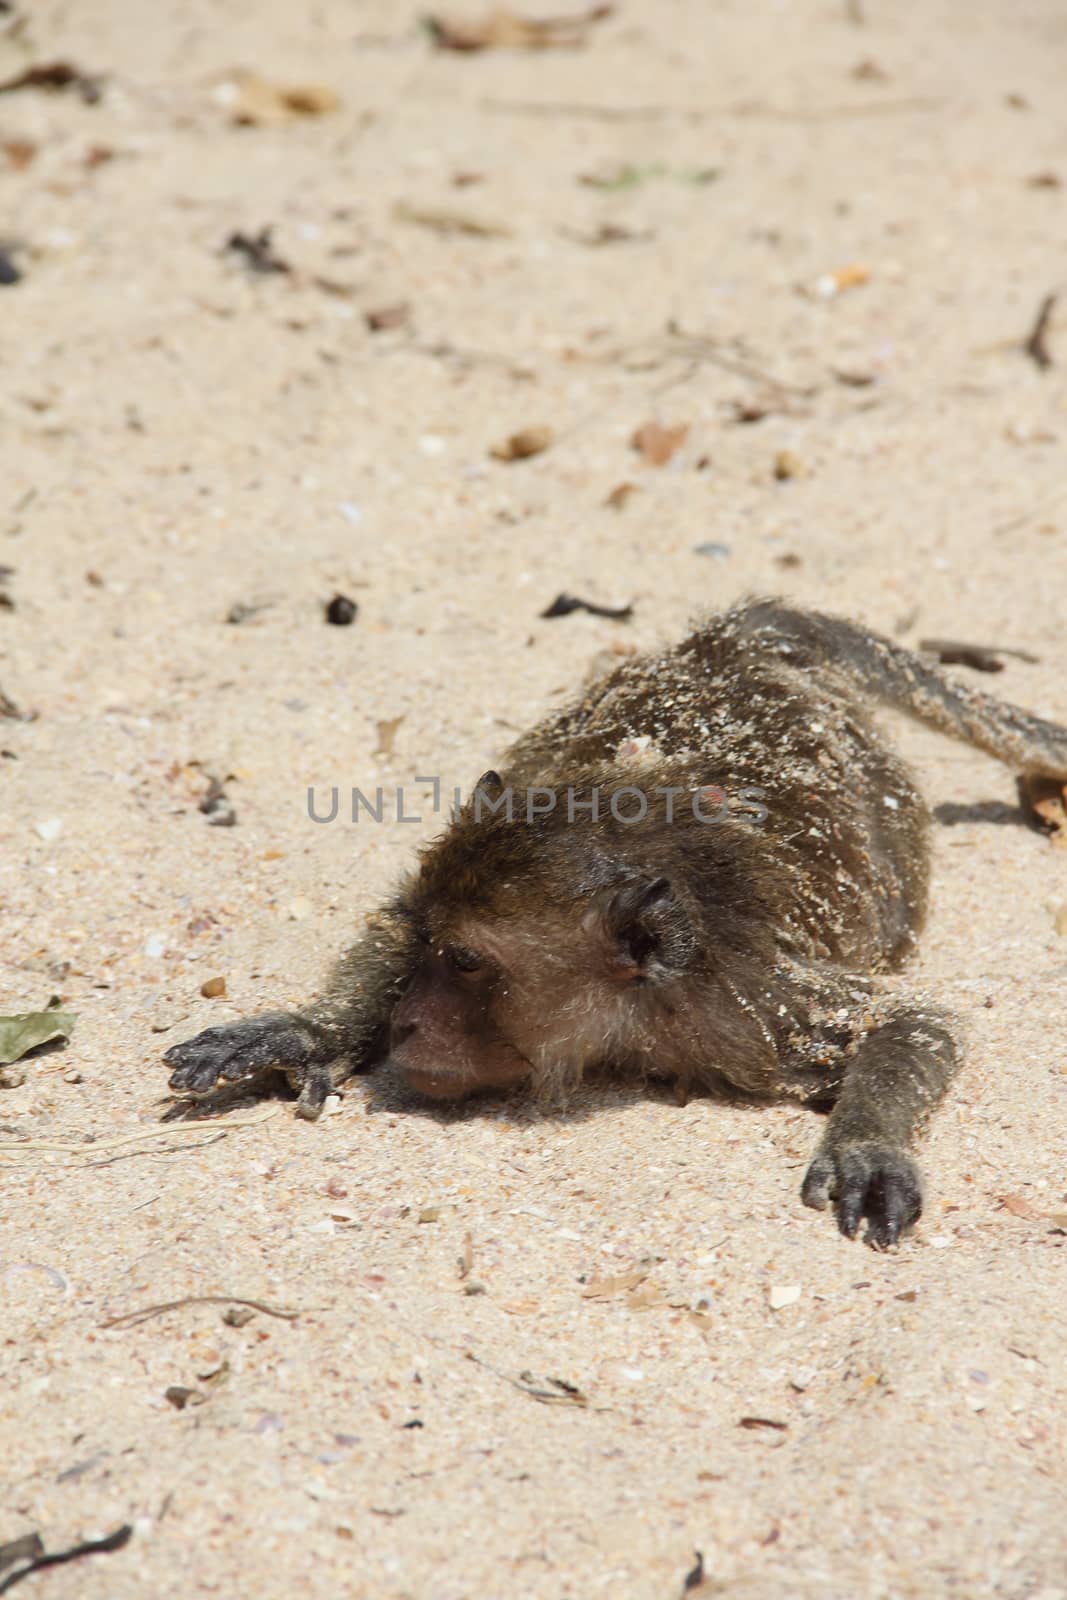 Wild monkey on sand by destillat